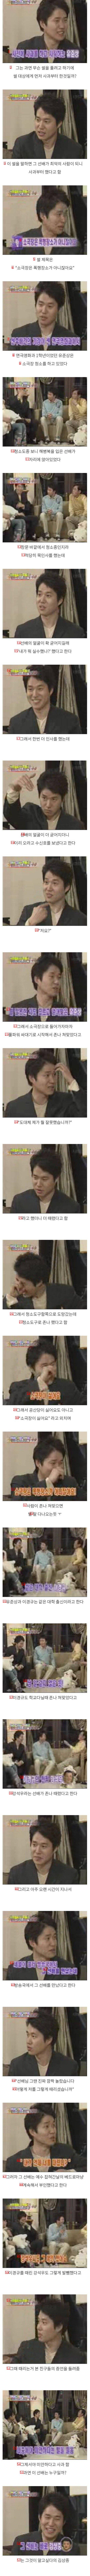 Kim Sang-joong defamed Namuwiki. LOL